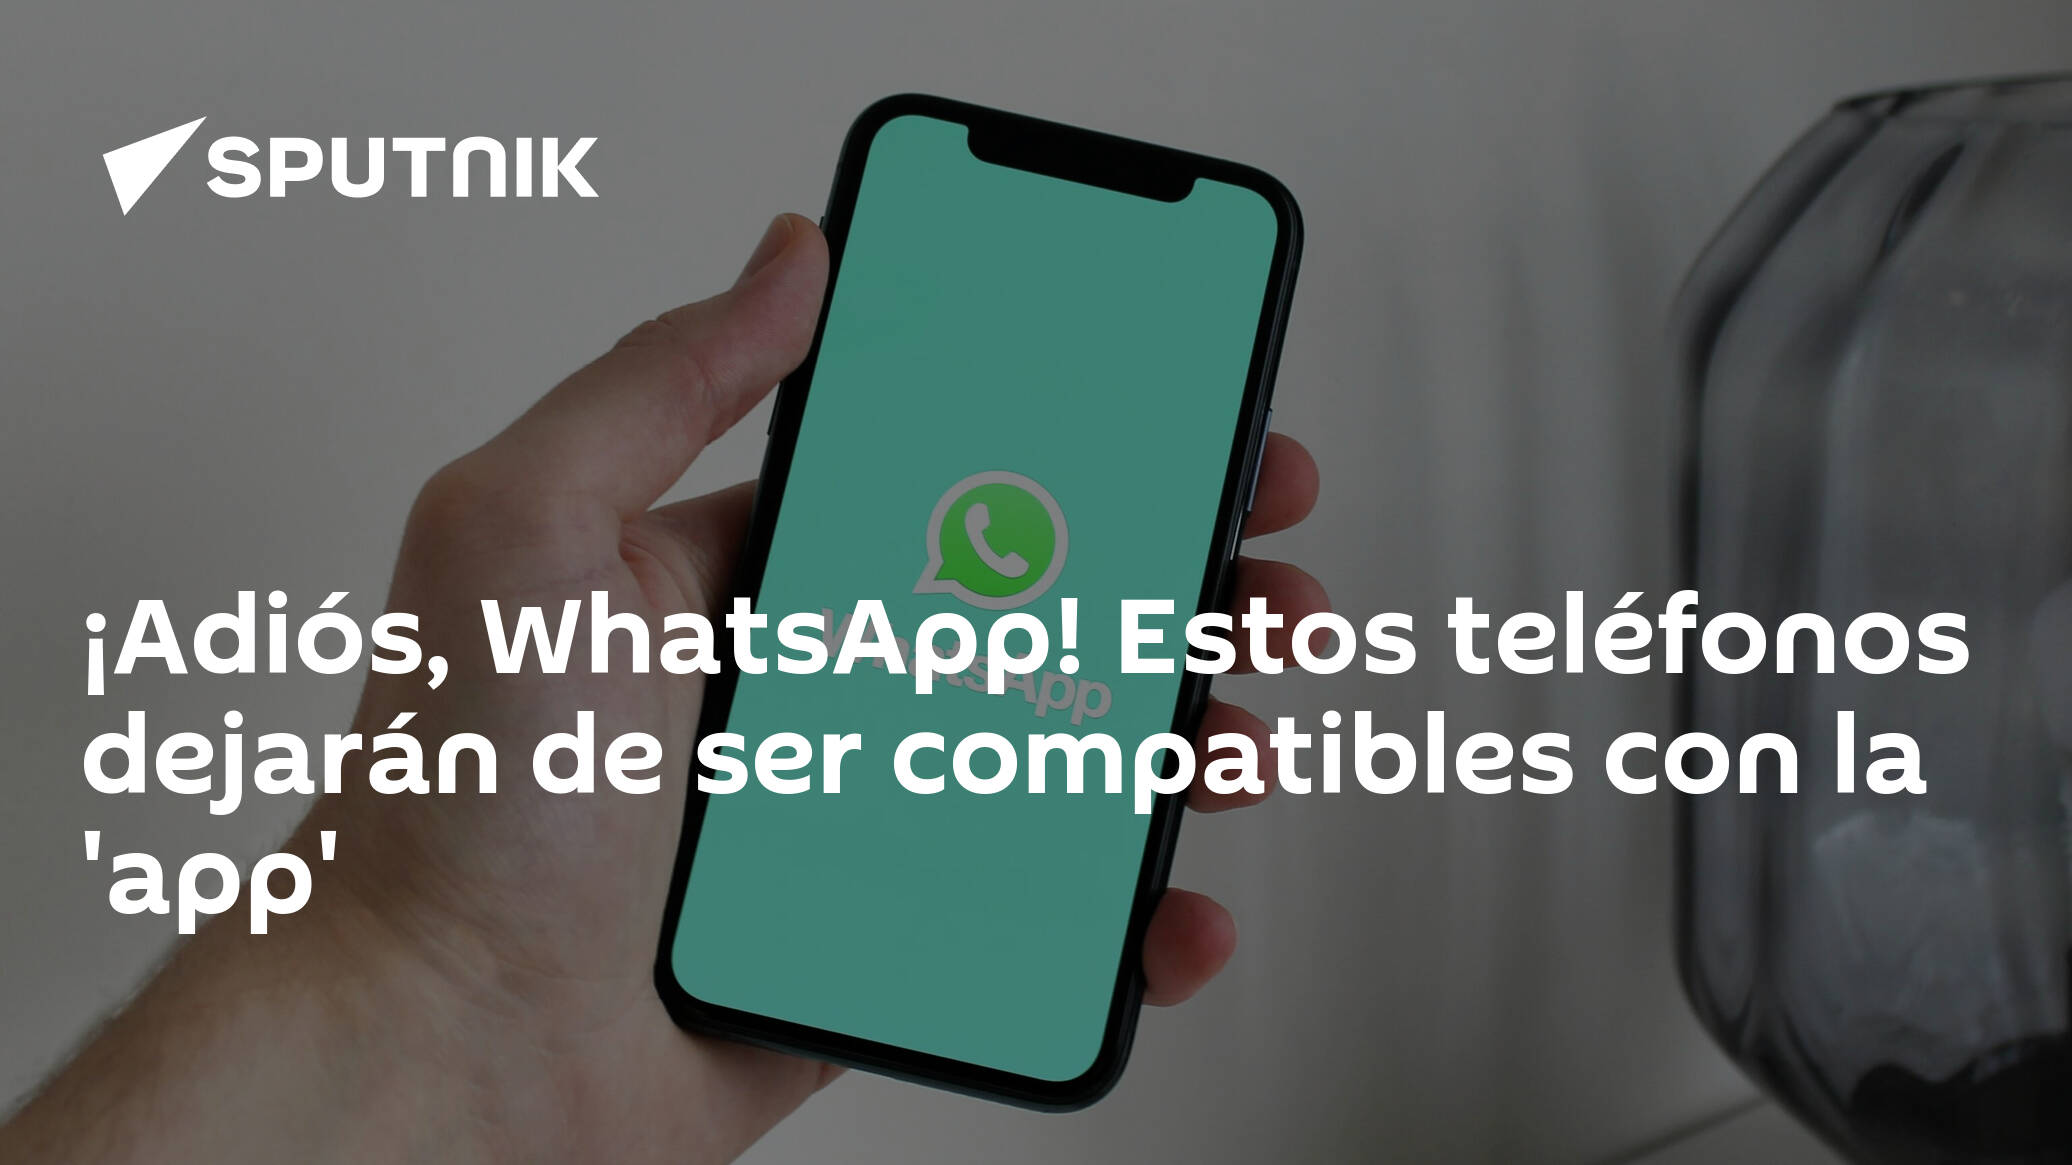 ¡adiós Whatsapp Estos Teléfonos Dejarán De Ser Compatibles Con La App 31012023 Sputnik 3550